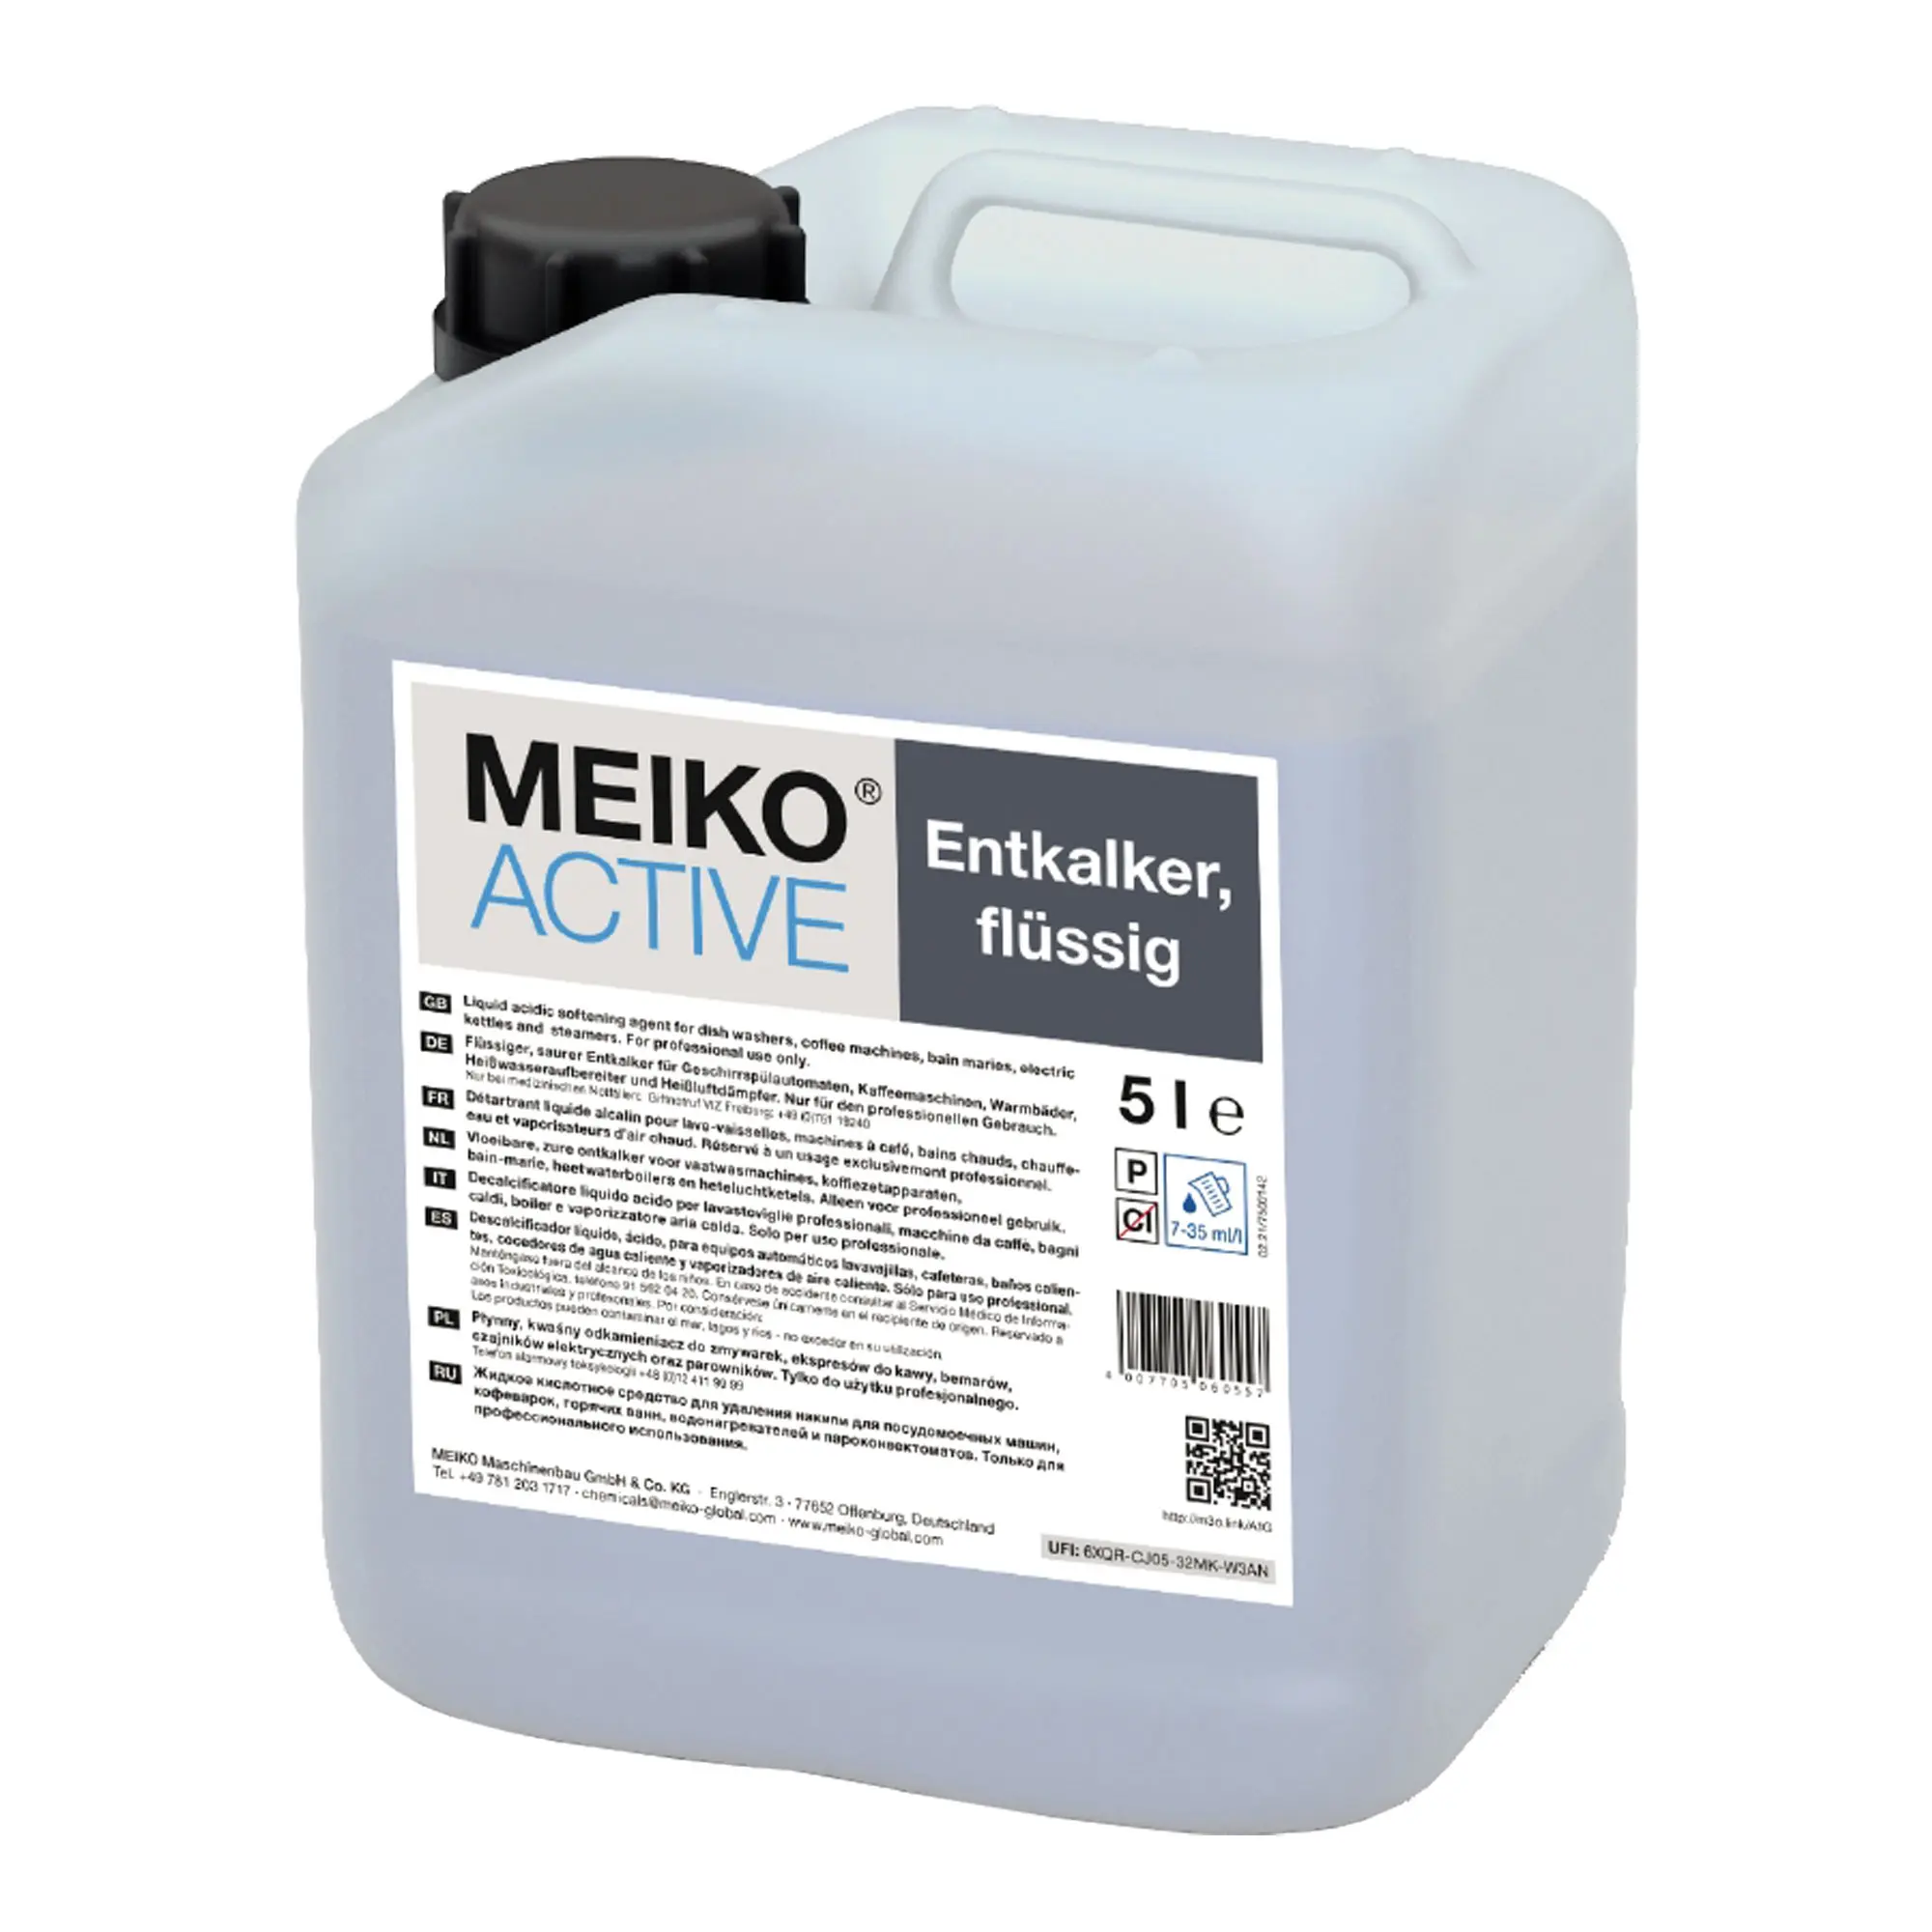 Meiko Active flüssiger Entkalker